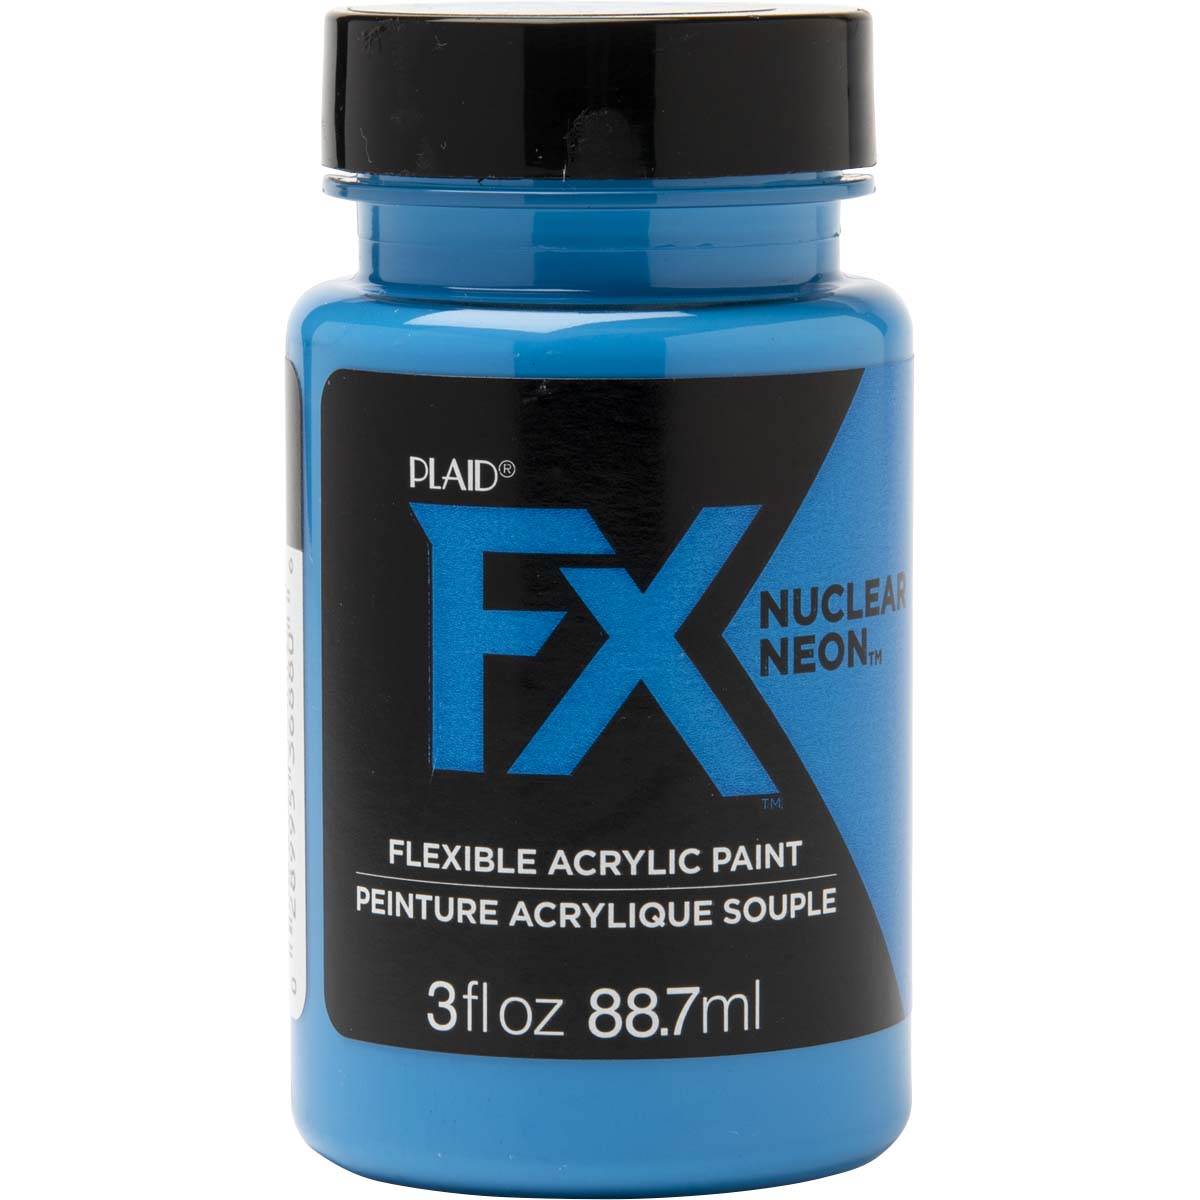 PlaidFX Nuclear Neon Flexible Acrylic Paint - Nitro Blue, 3 oz. - 36880